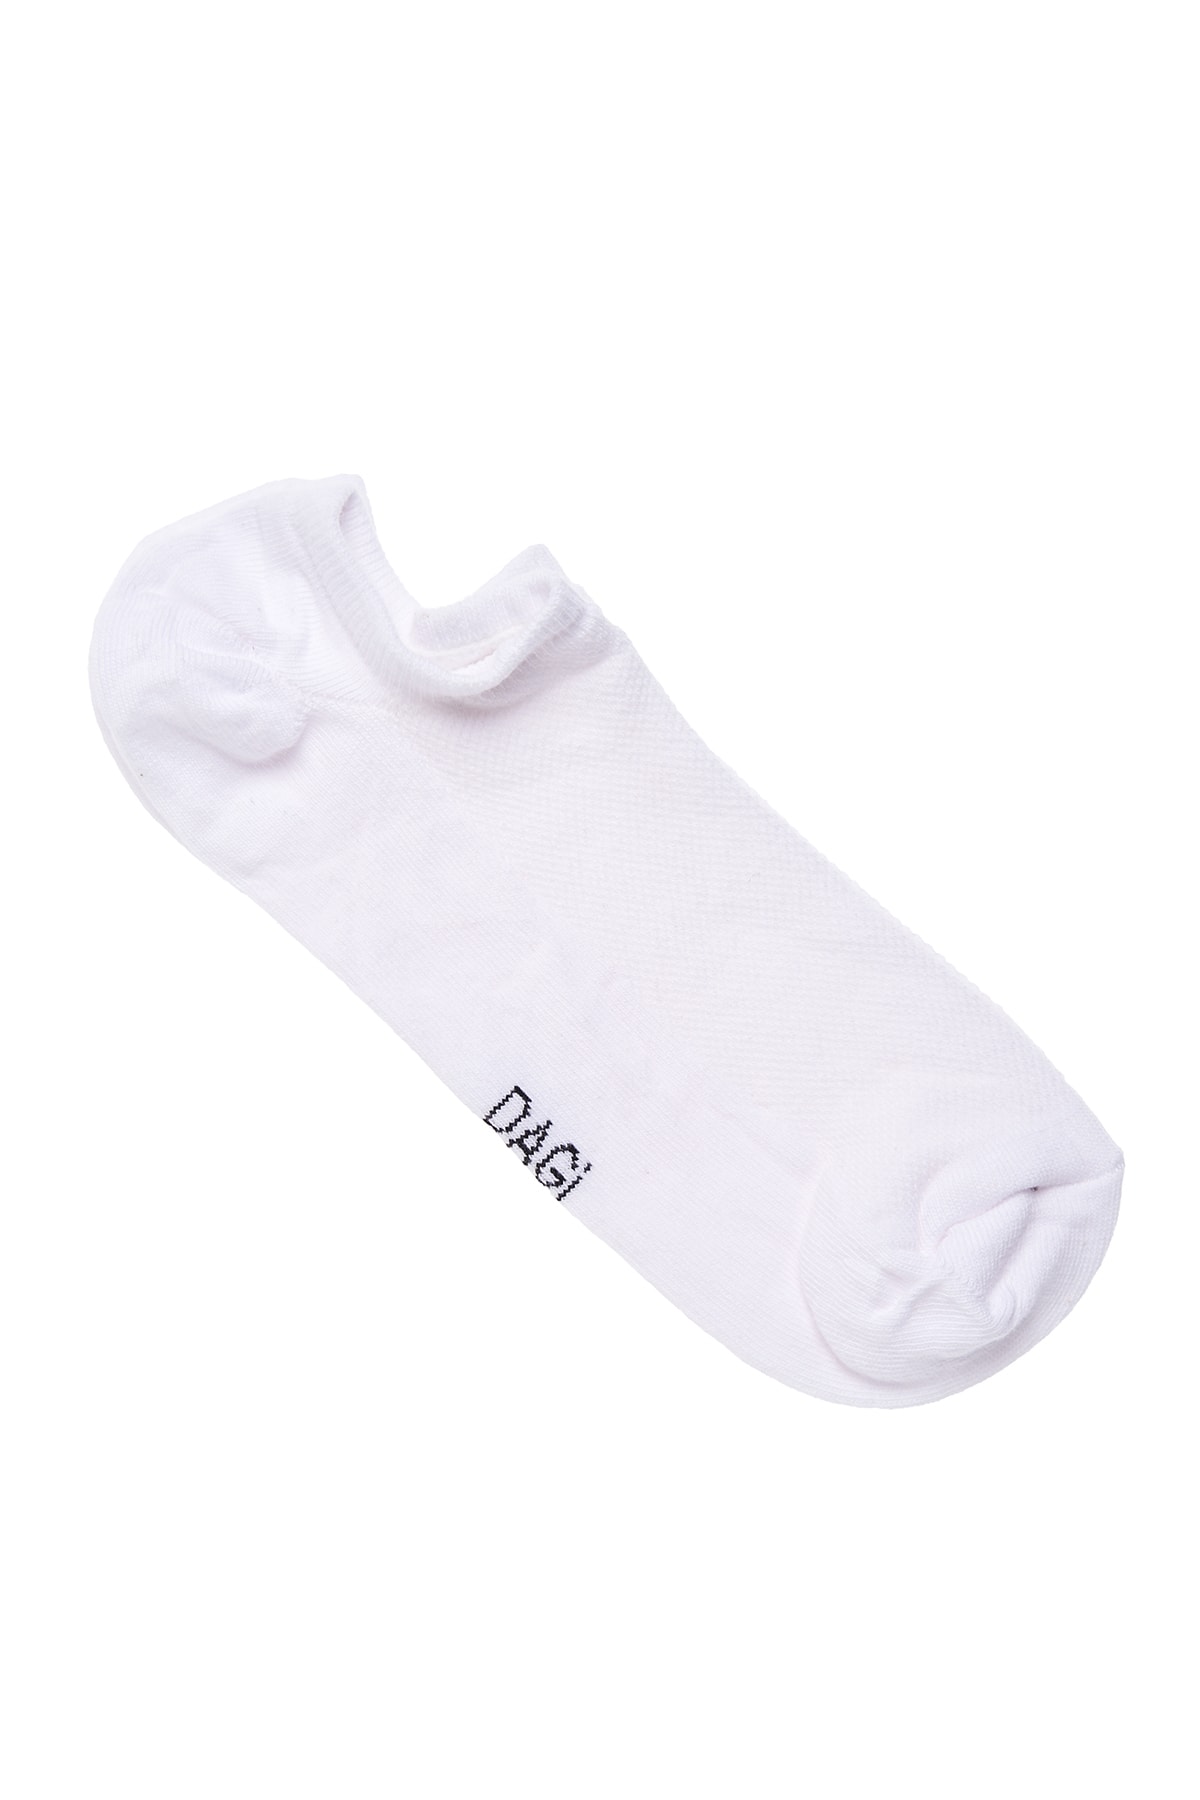 Dagi White Men's Cotton Short Ballerina Socks